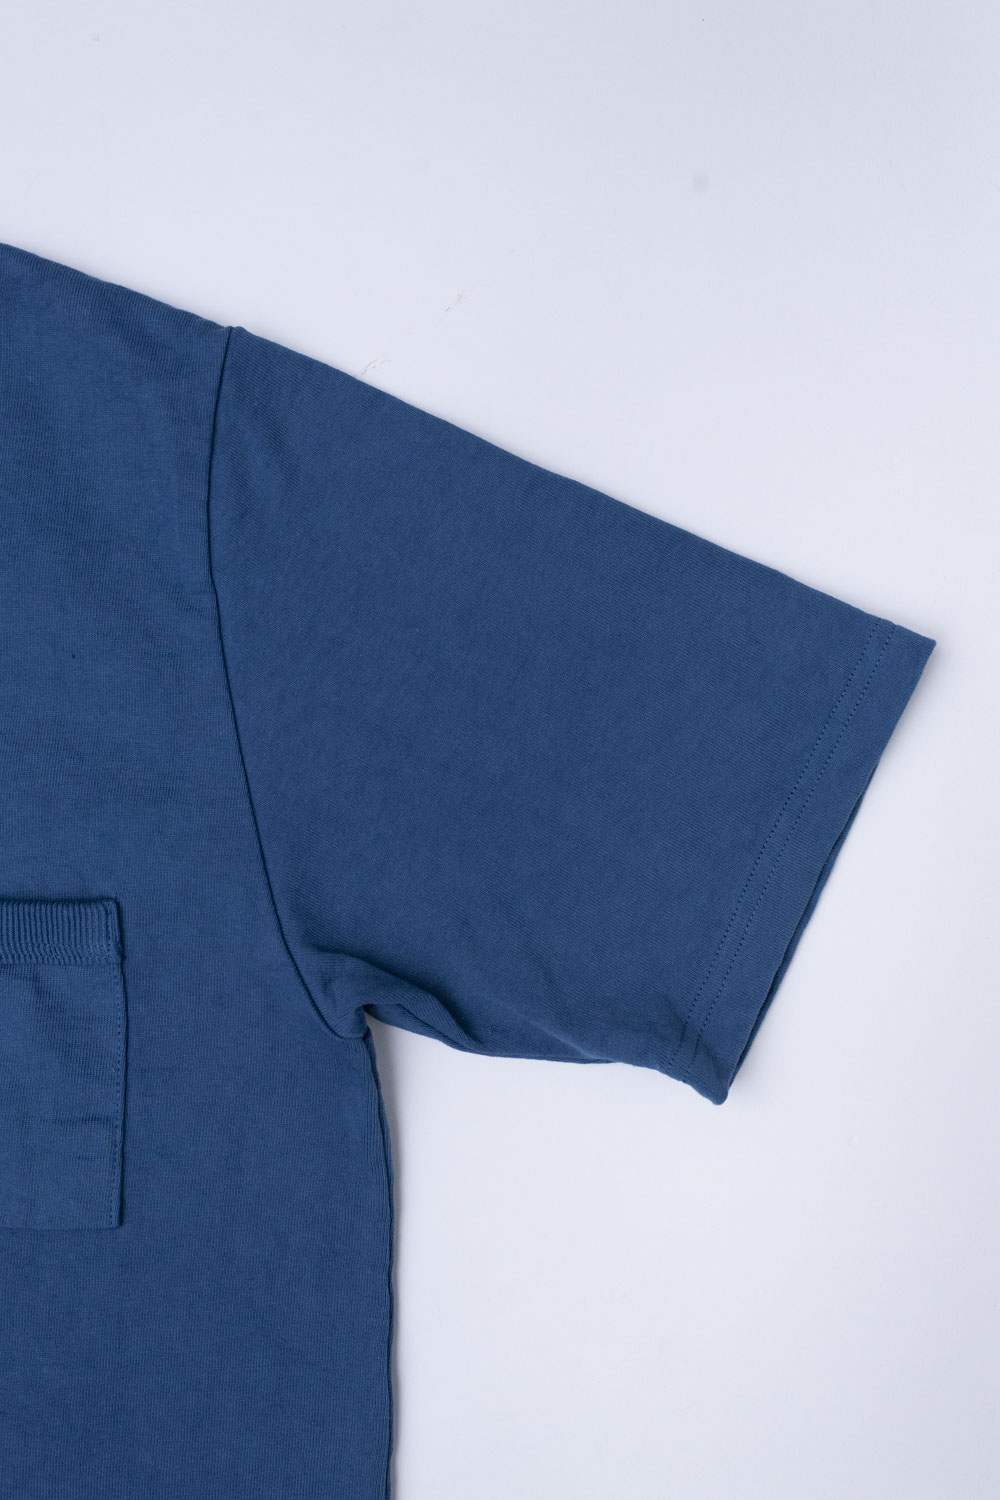 Dotsume Pocket T-Shirt - 276 Horizon Blue | James Dant